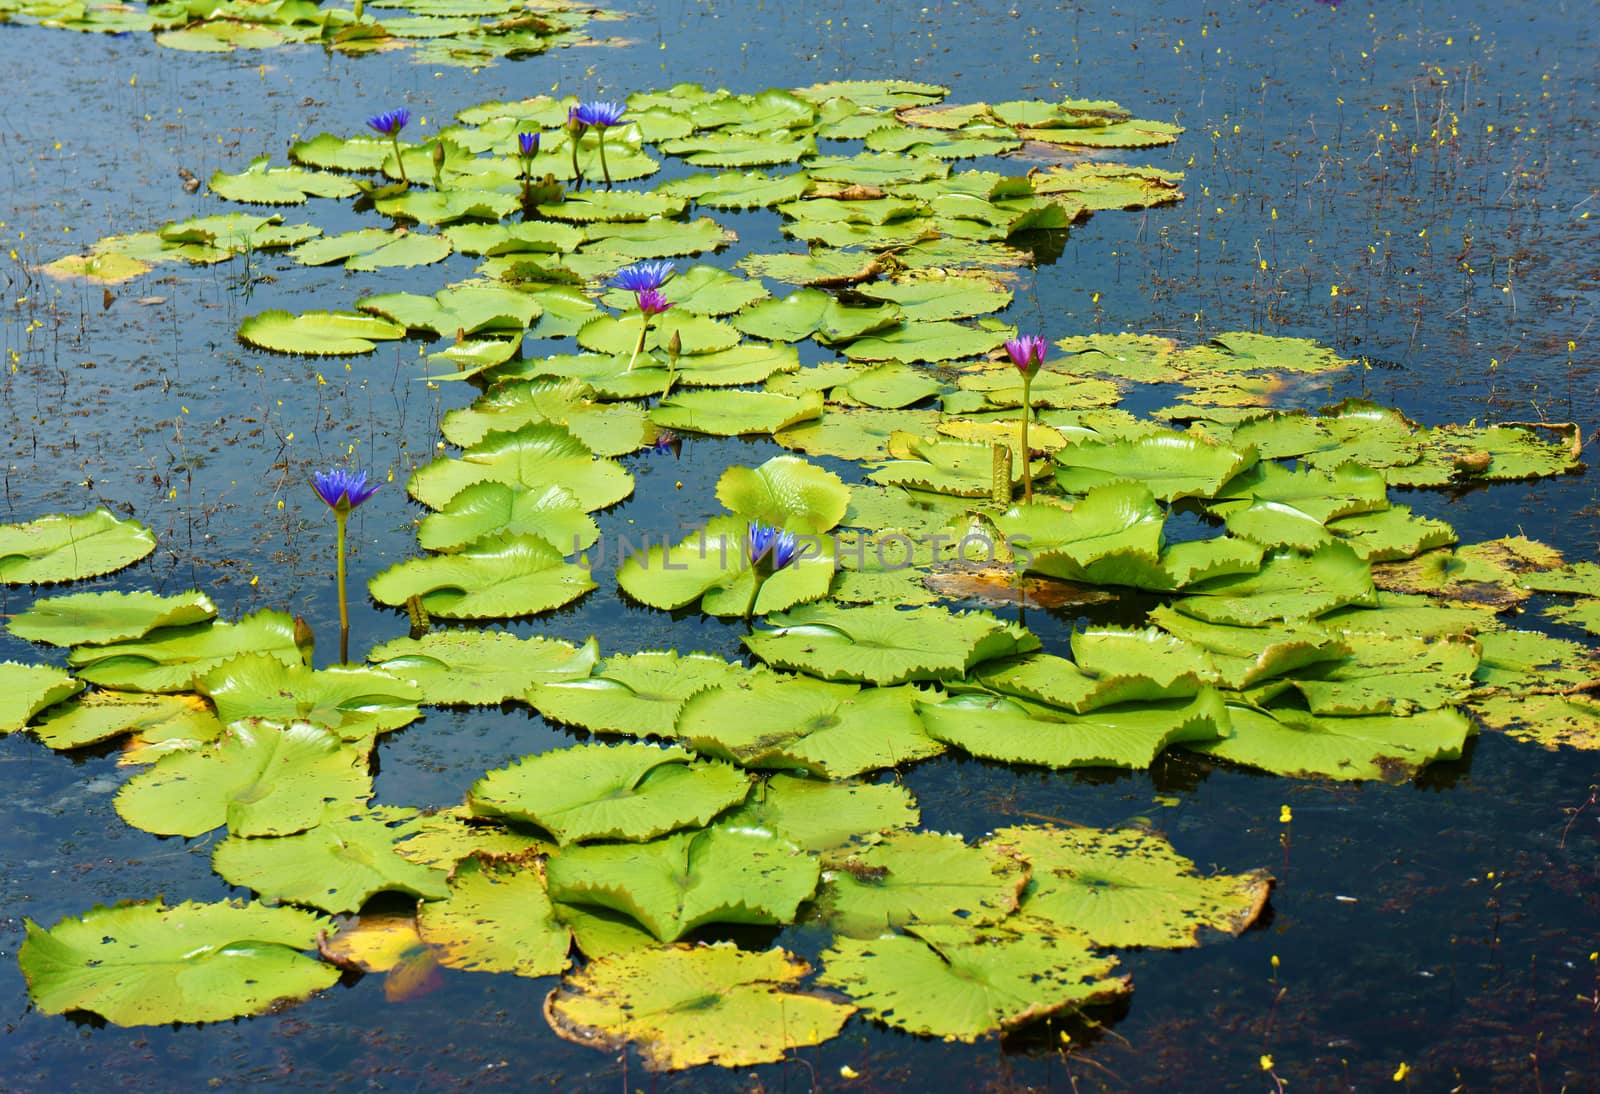 Beautiful Vietnam lake, amazing water lilly by xuanhuongho